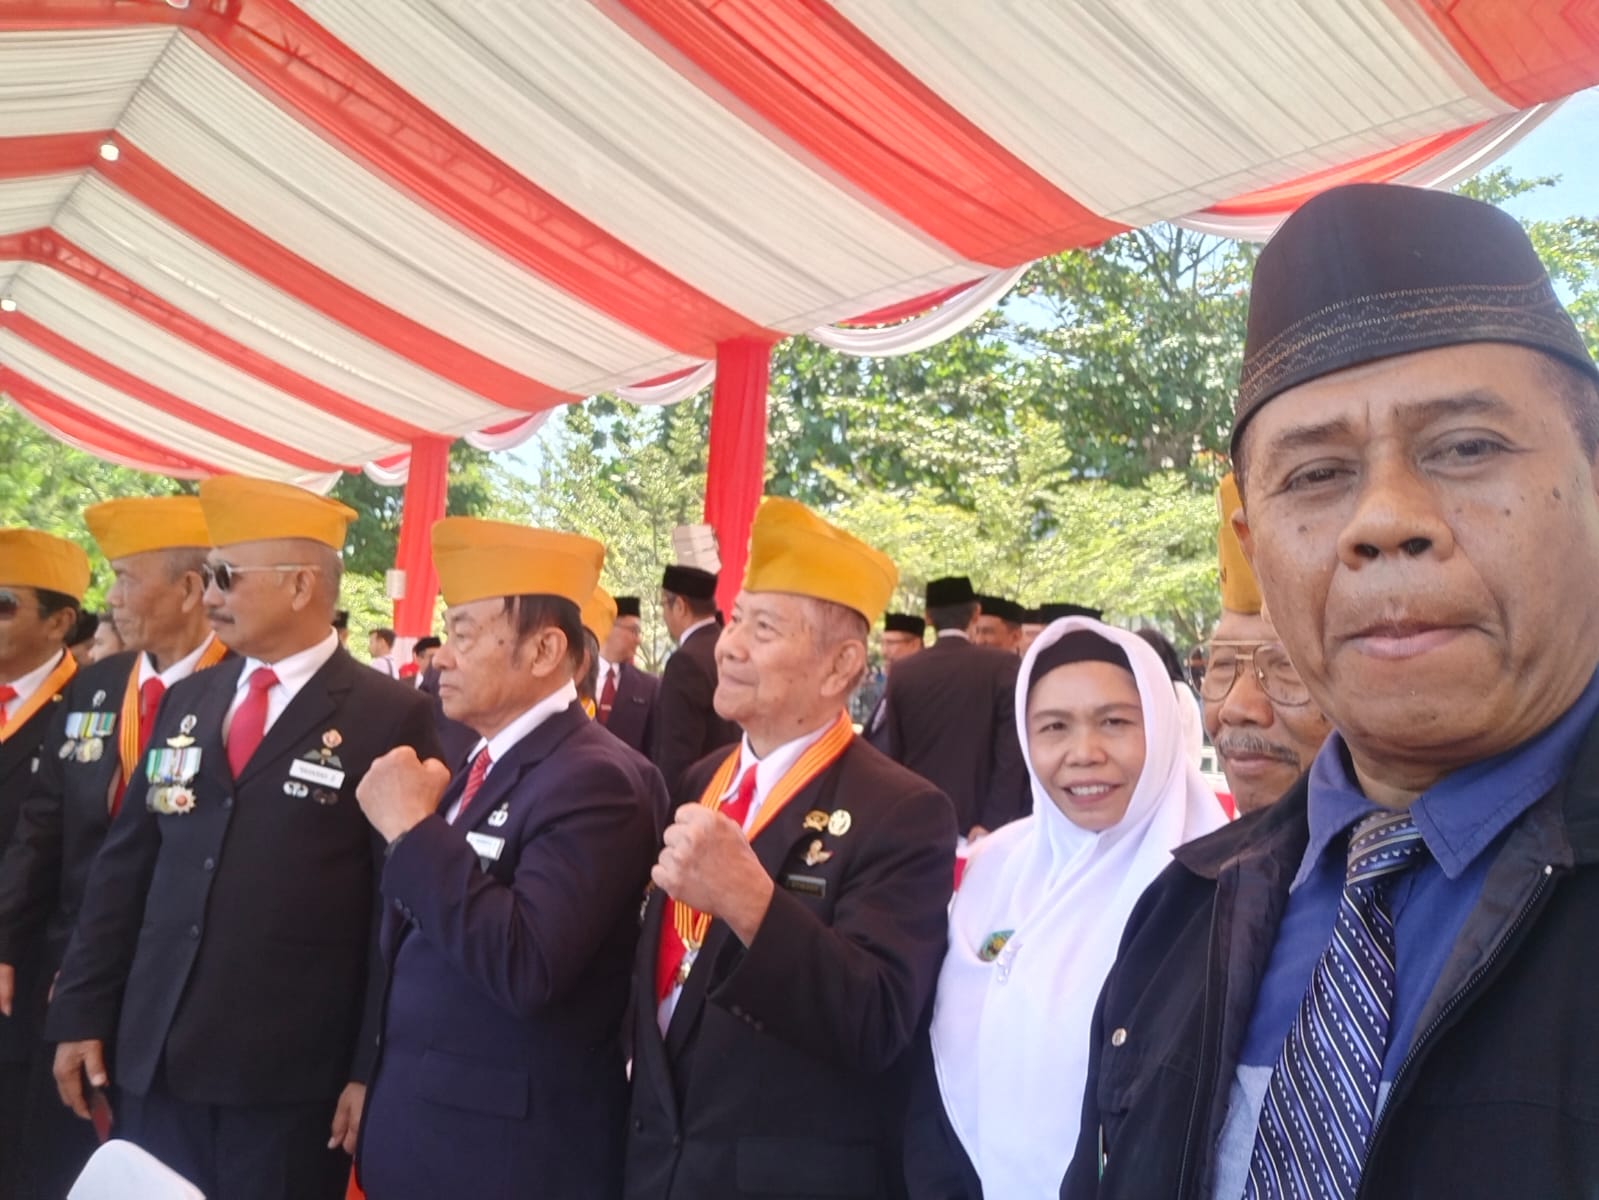 Poto sekjen DPP Padjajaran Siliwangi Nusantara bersama staf khusus padjajaran Siliwangi Nusantara